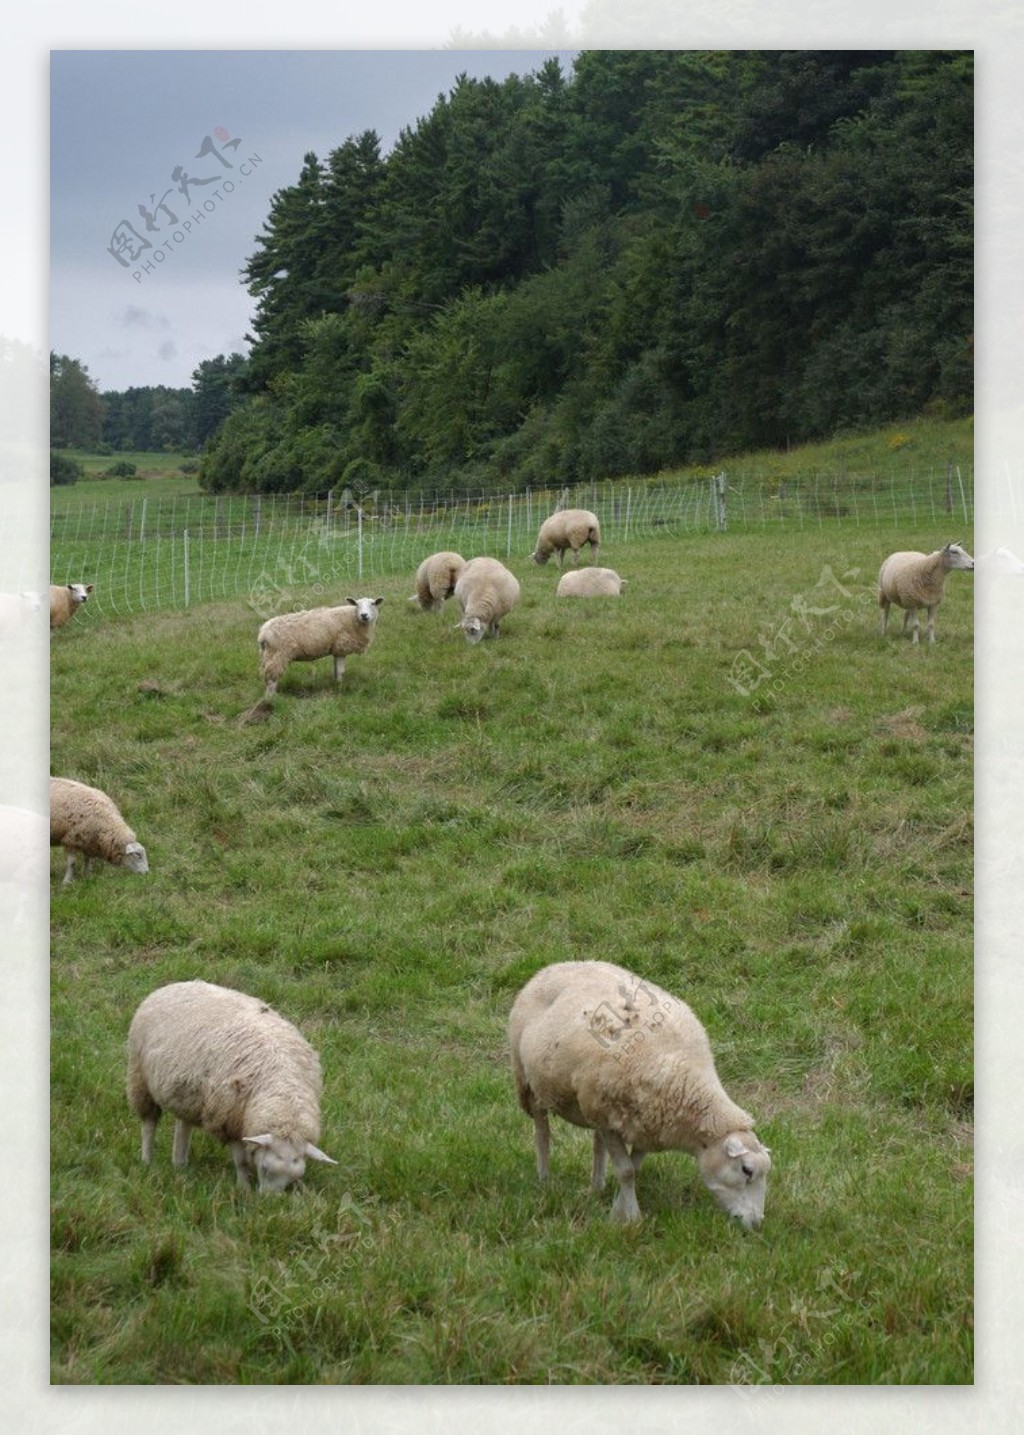 草原上的羊群图片